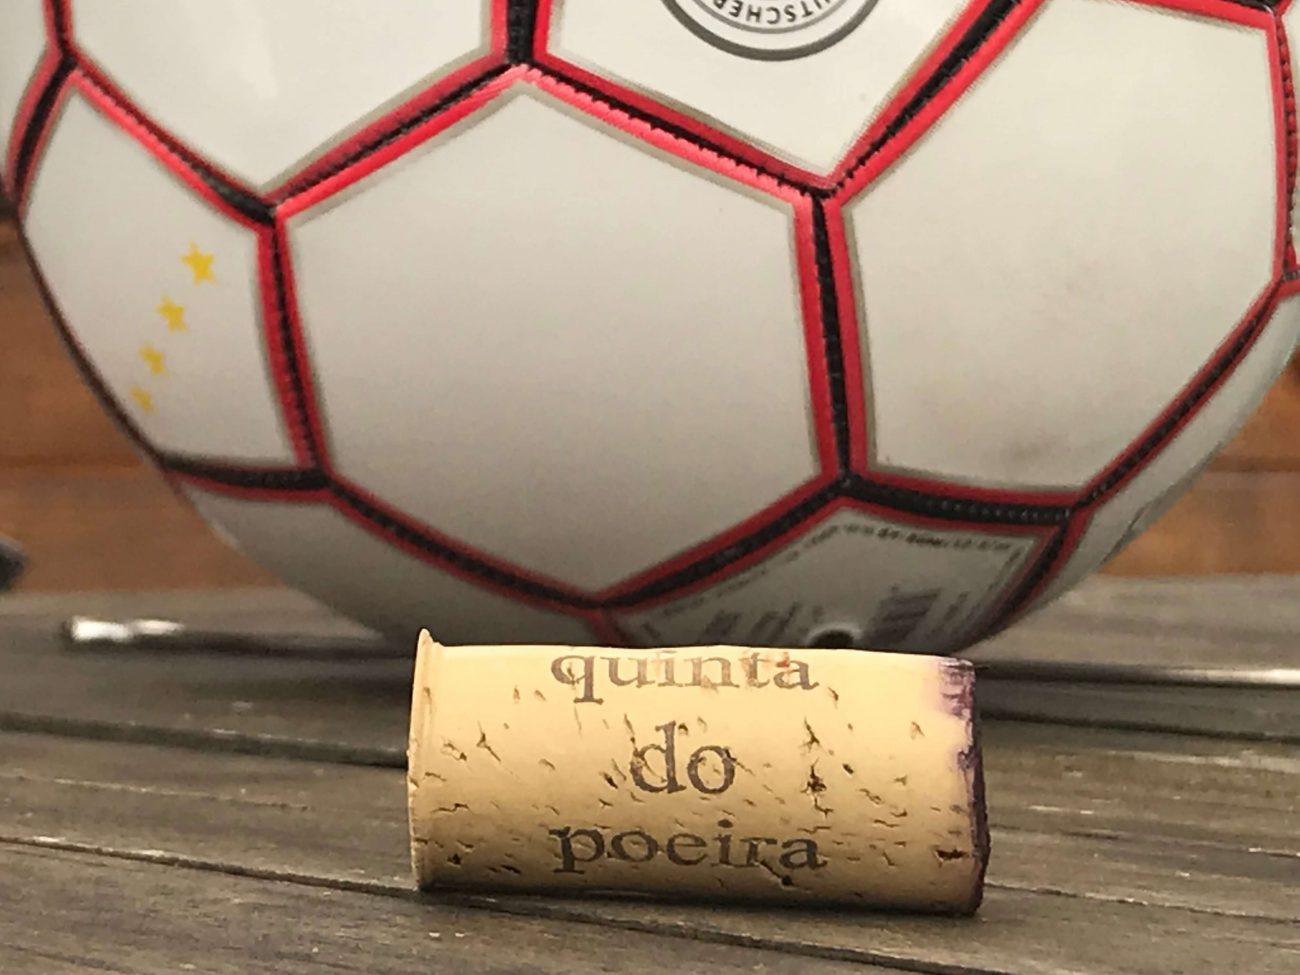 Fußball und Wein - Portugal Fußball-WM Rotwein trinken Quinta Poeira